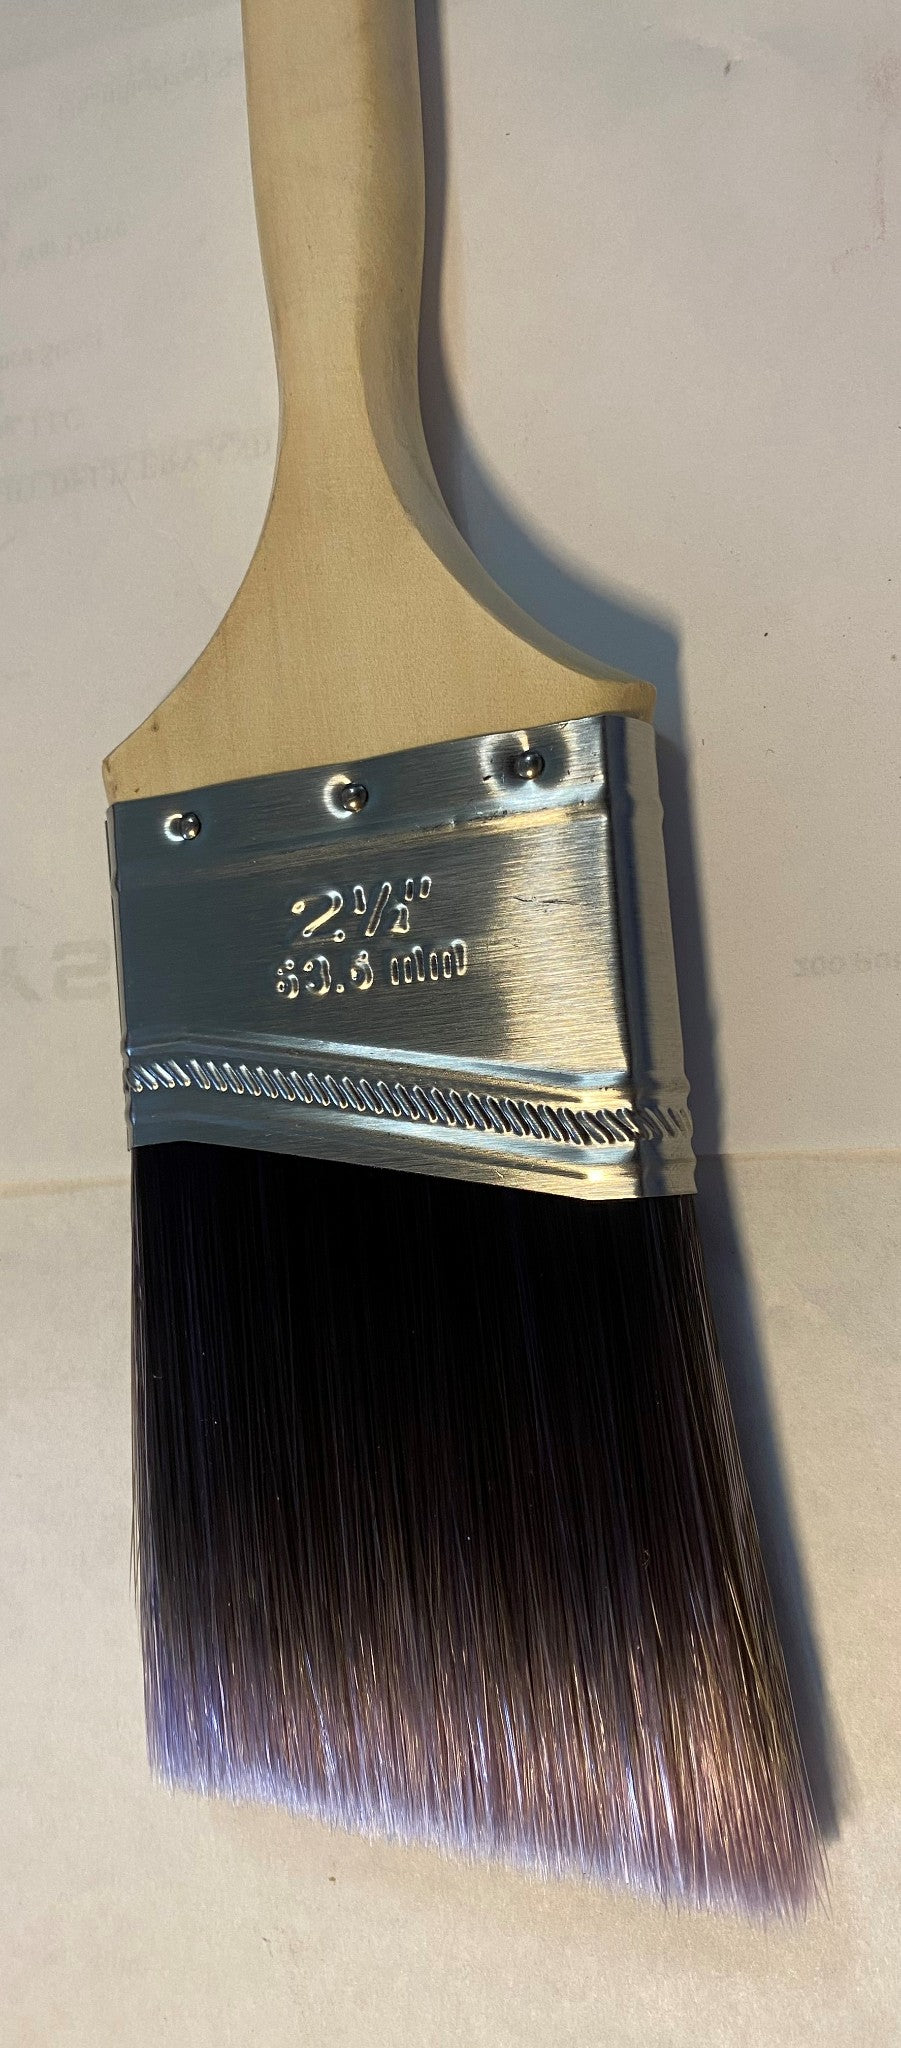 Linzer 21524 2-1/2" Angle Sash Pro Quality Brush Paint Brush